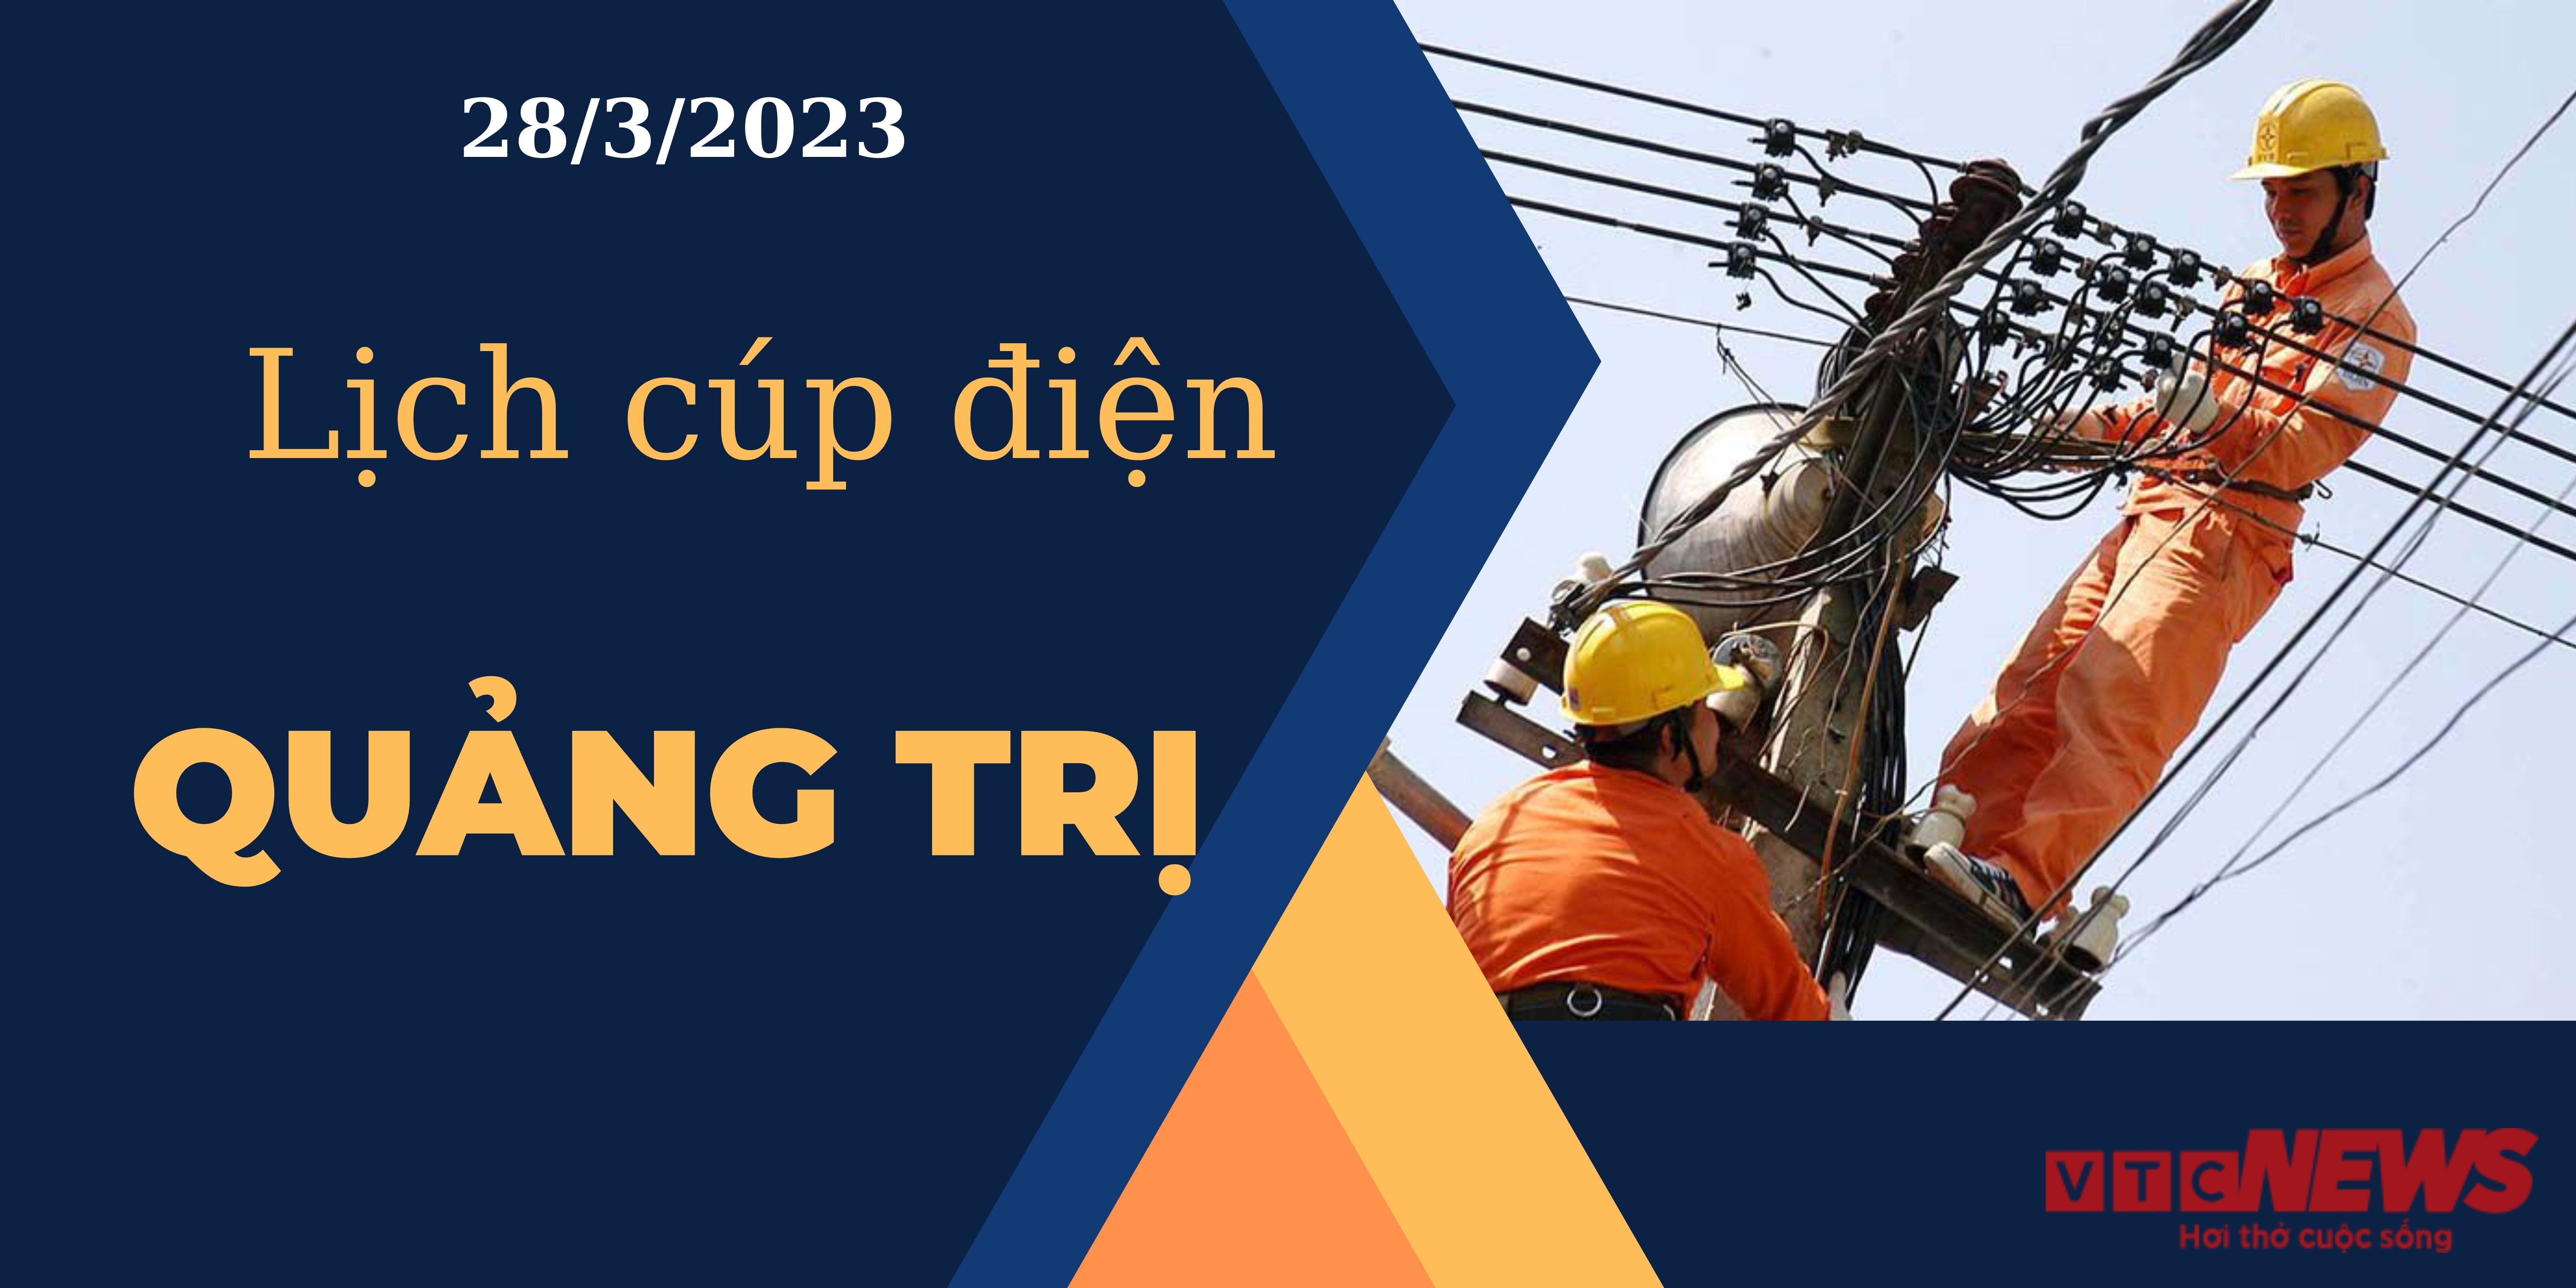 Lịch cúp điện hôm nay tại Quảng Trị ngày 28/03/2023 - 1